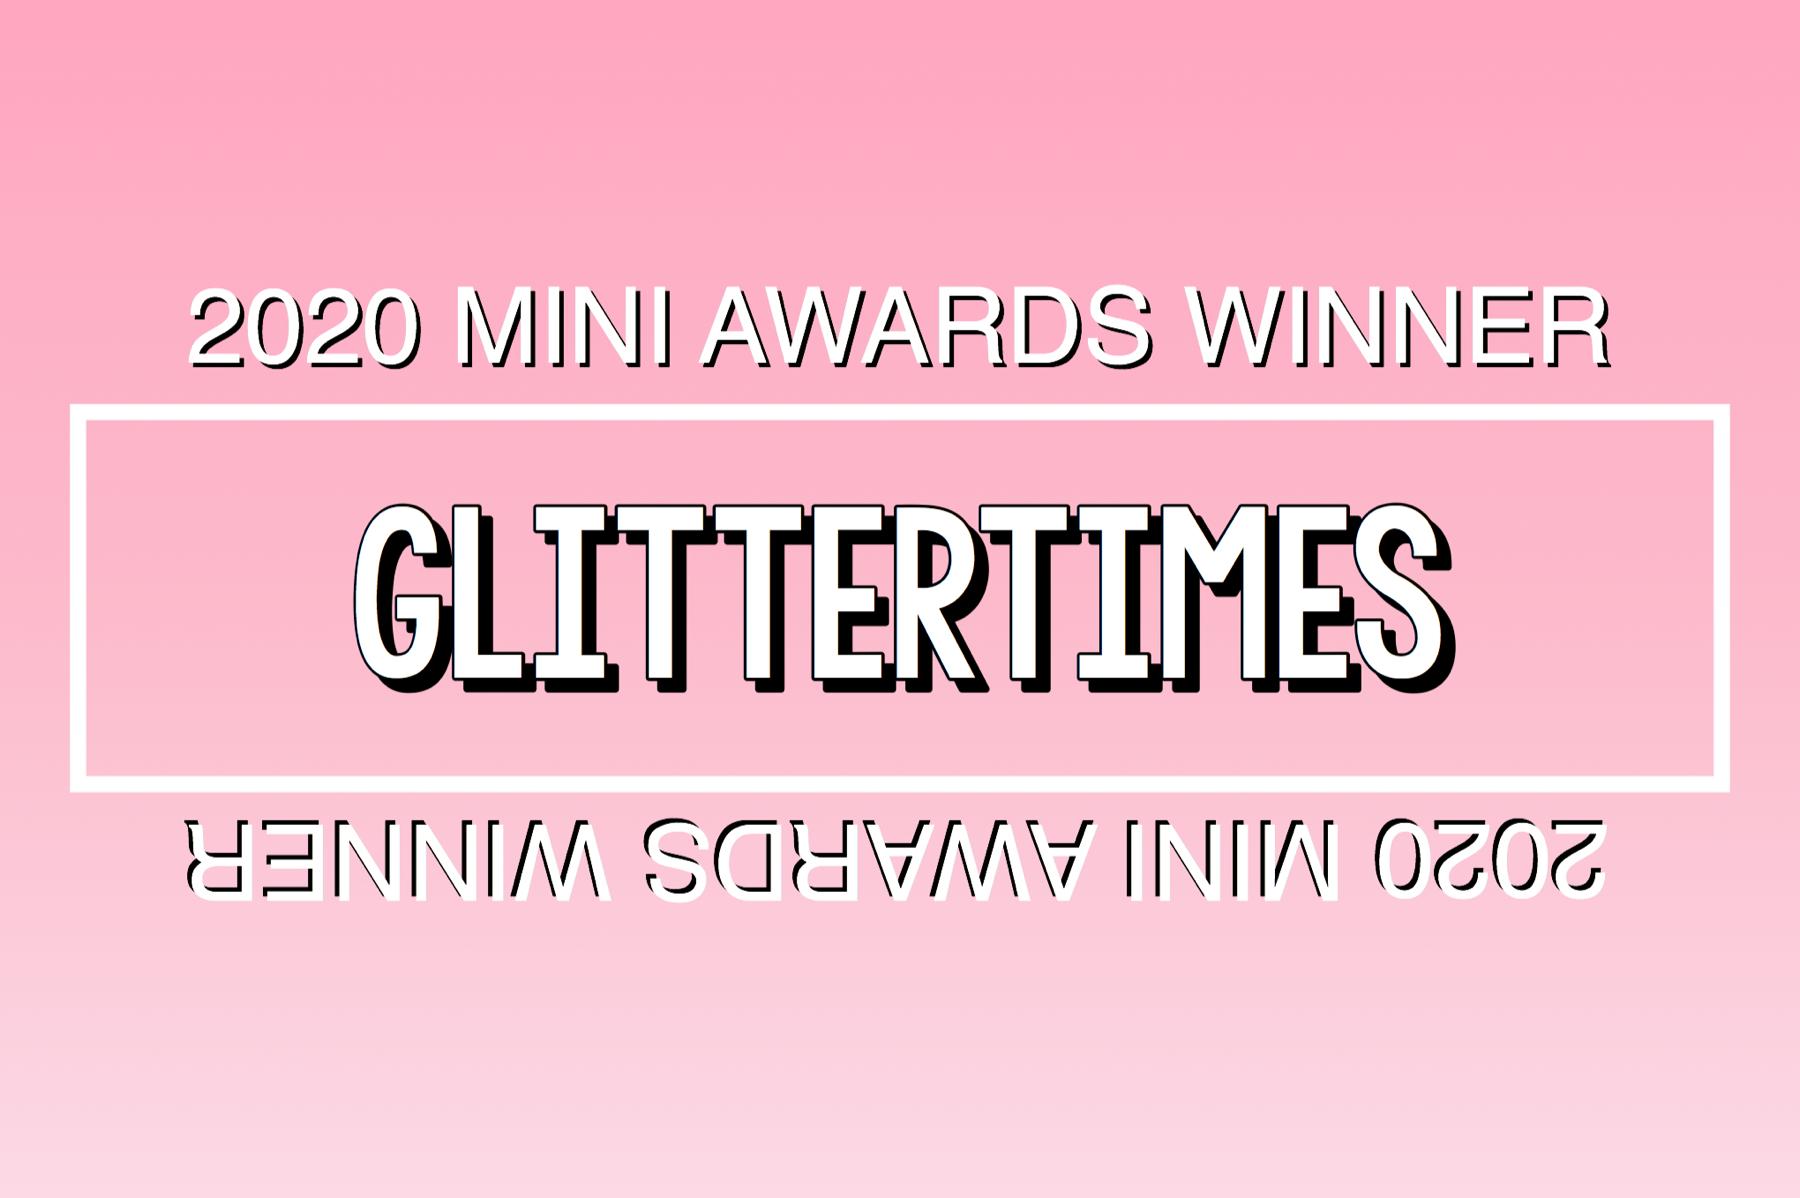 2020 Mini Awards Winner @glittertimes!